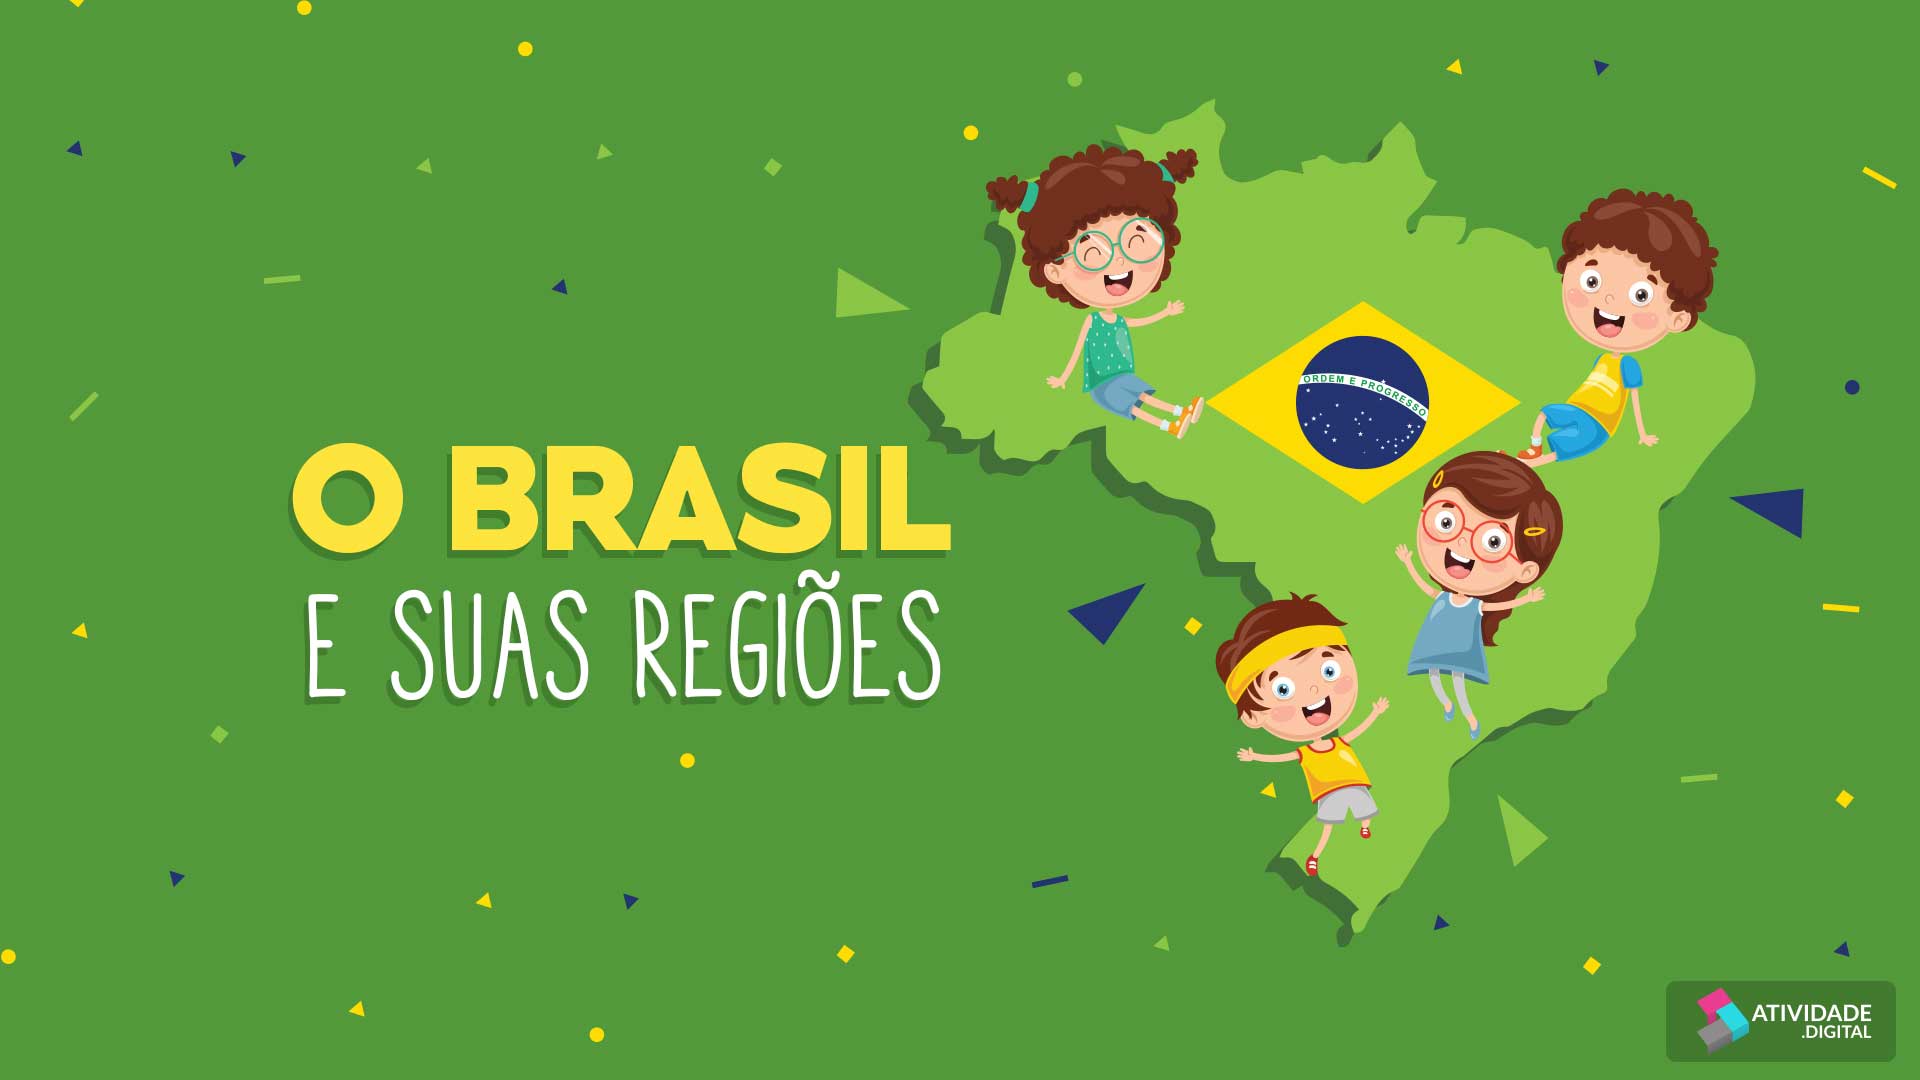 O Brasil e suas regiões